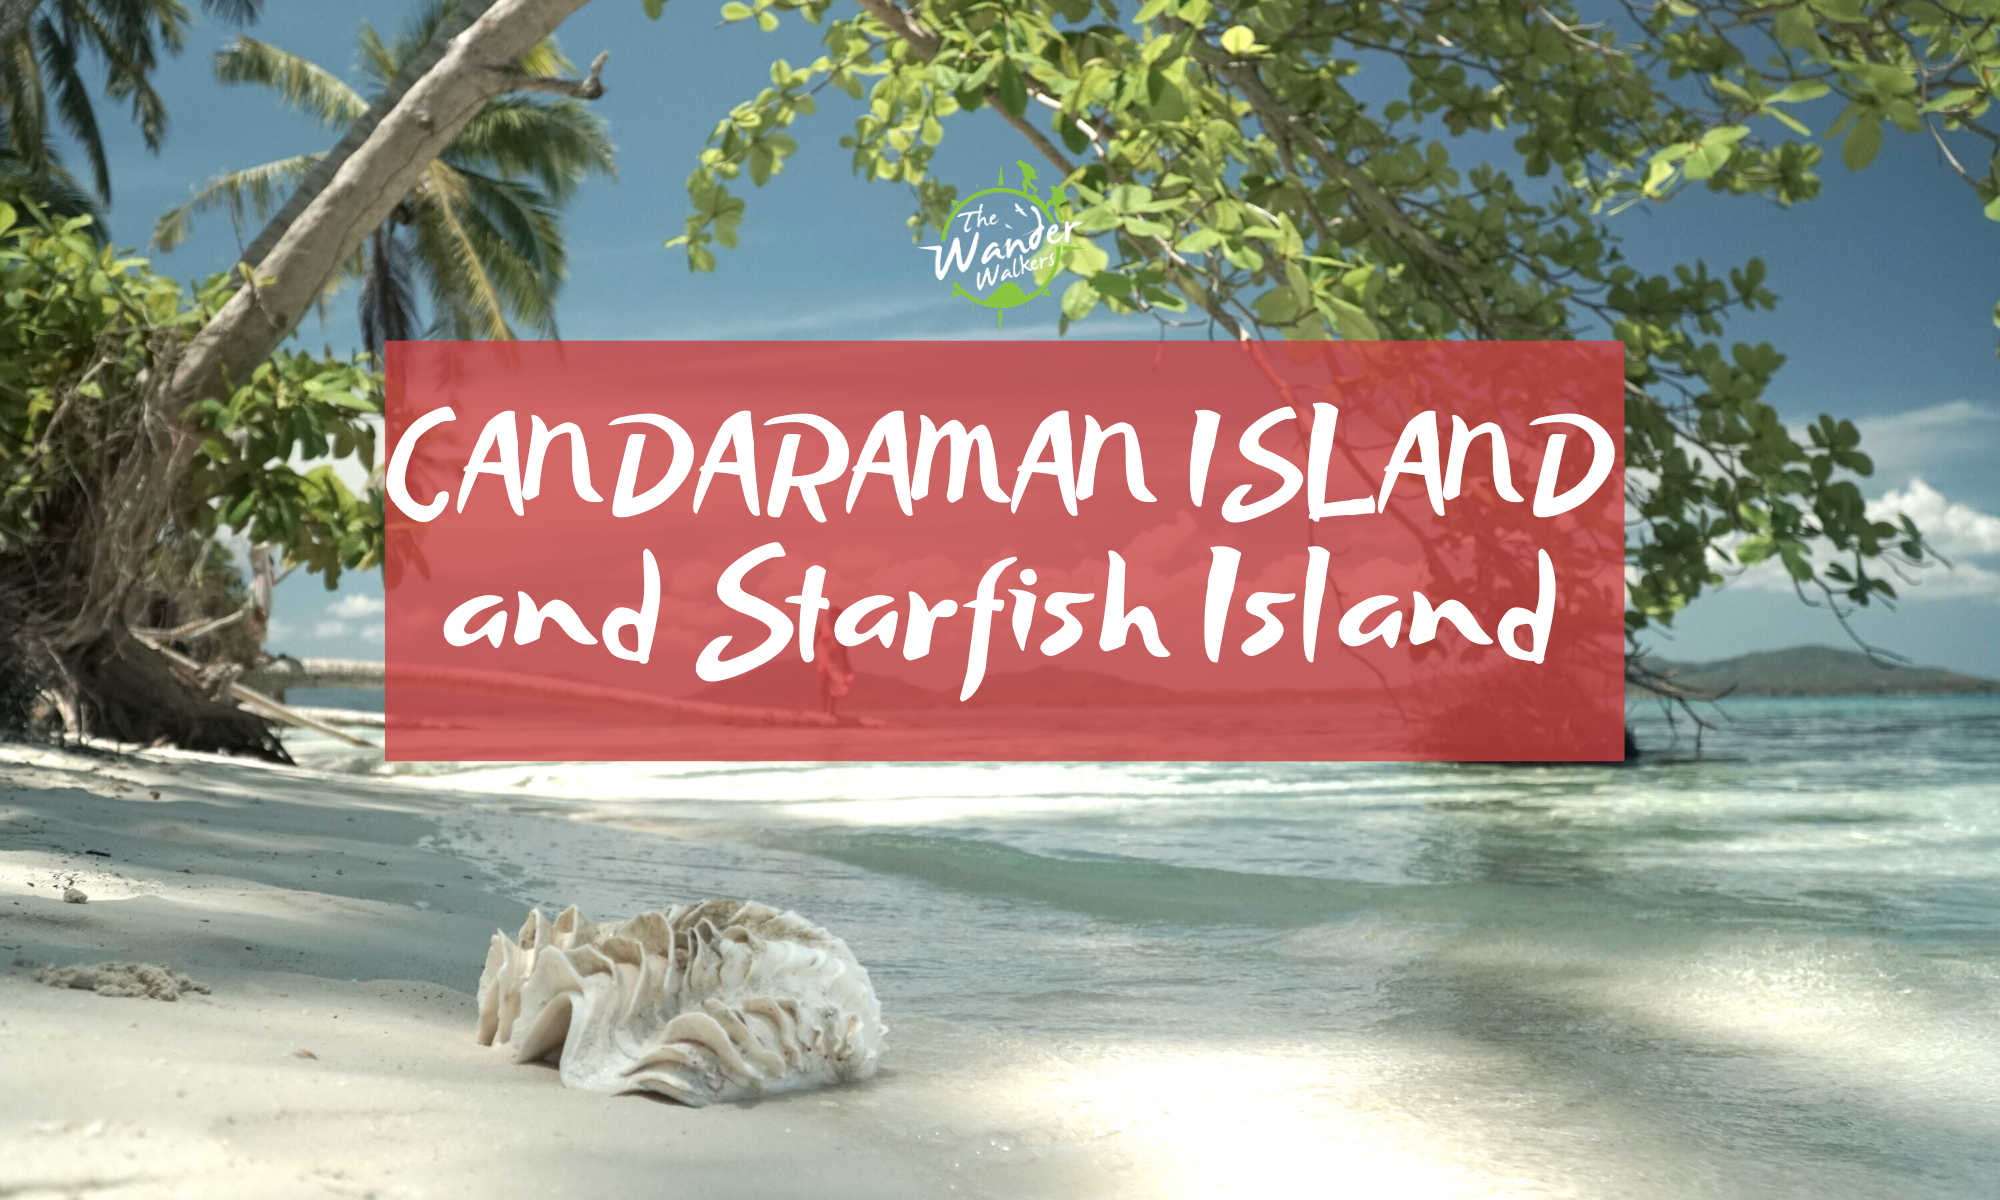 Candaraman Island and Starfish Island